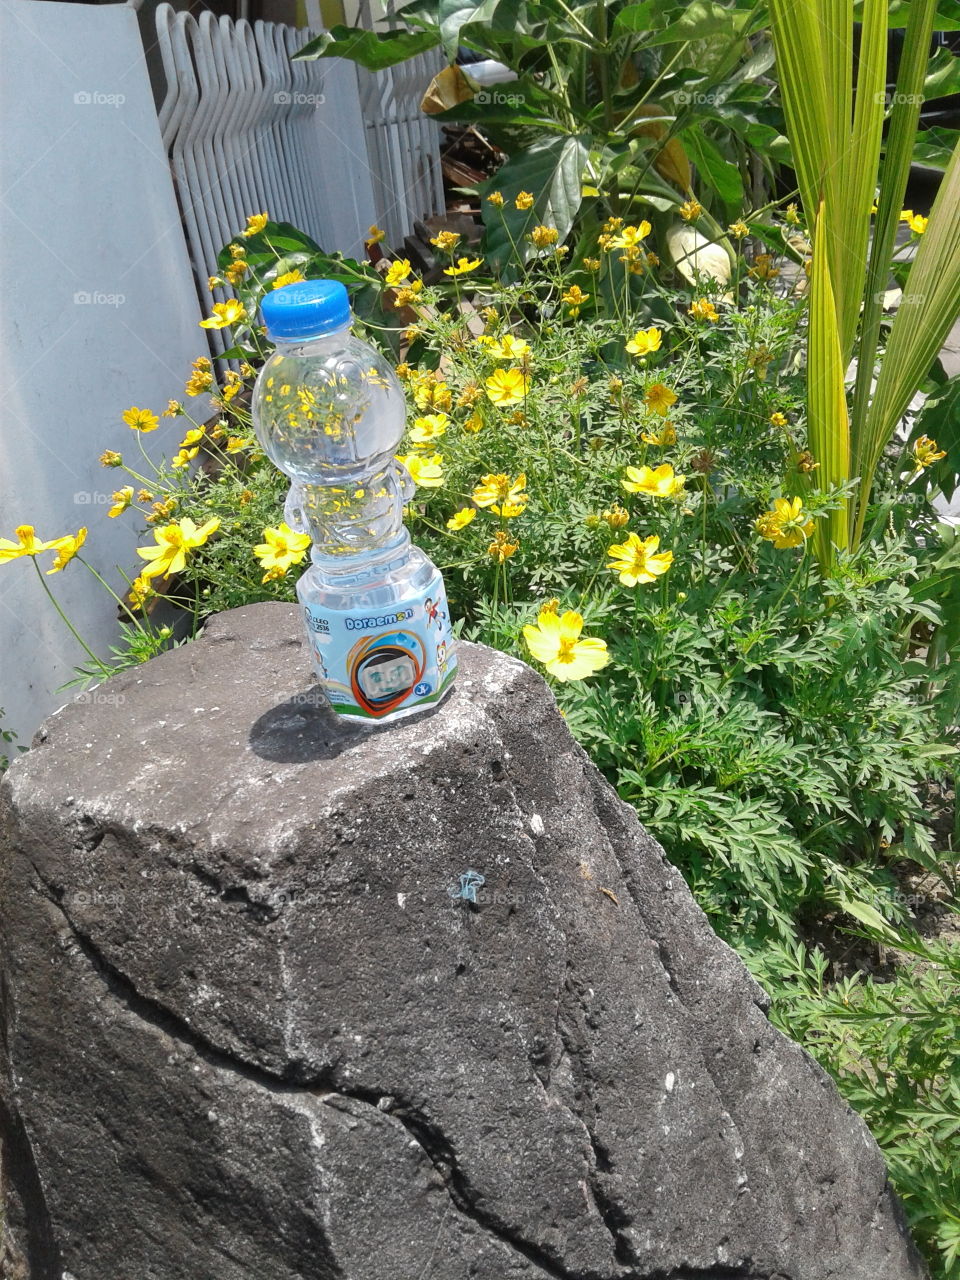 Doraemon Bottle and Yellow Flower...💛